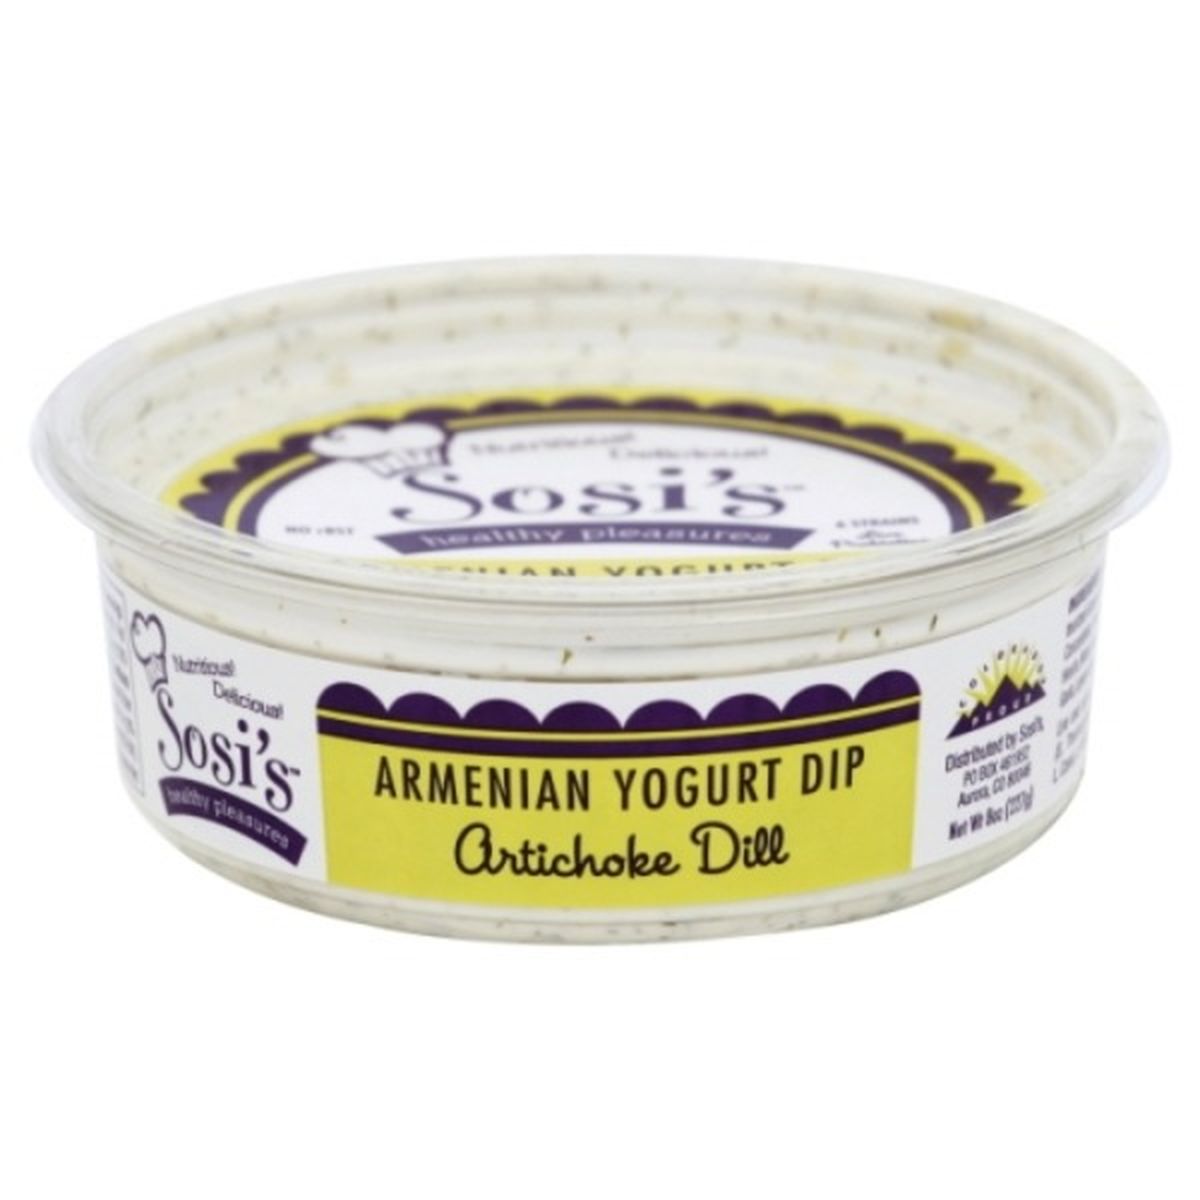 Calories in Sosi's Healthy Pleasures Yogurt Dip, Armenian, Artichoke Dill